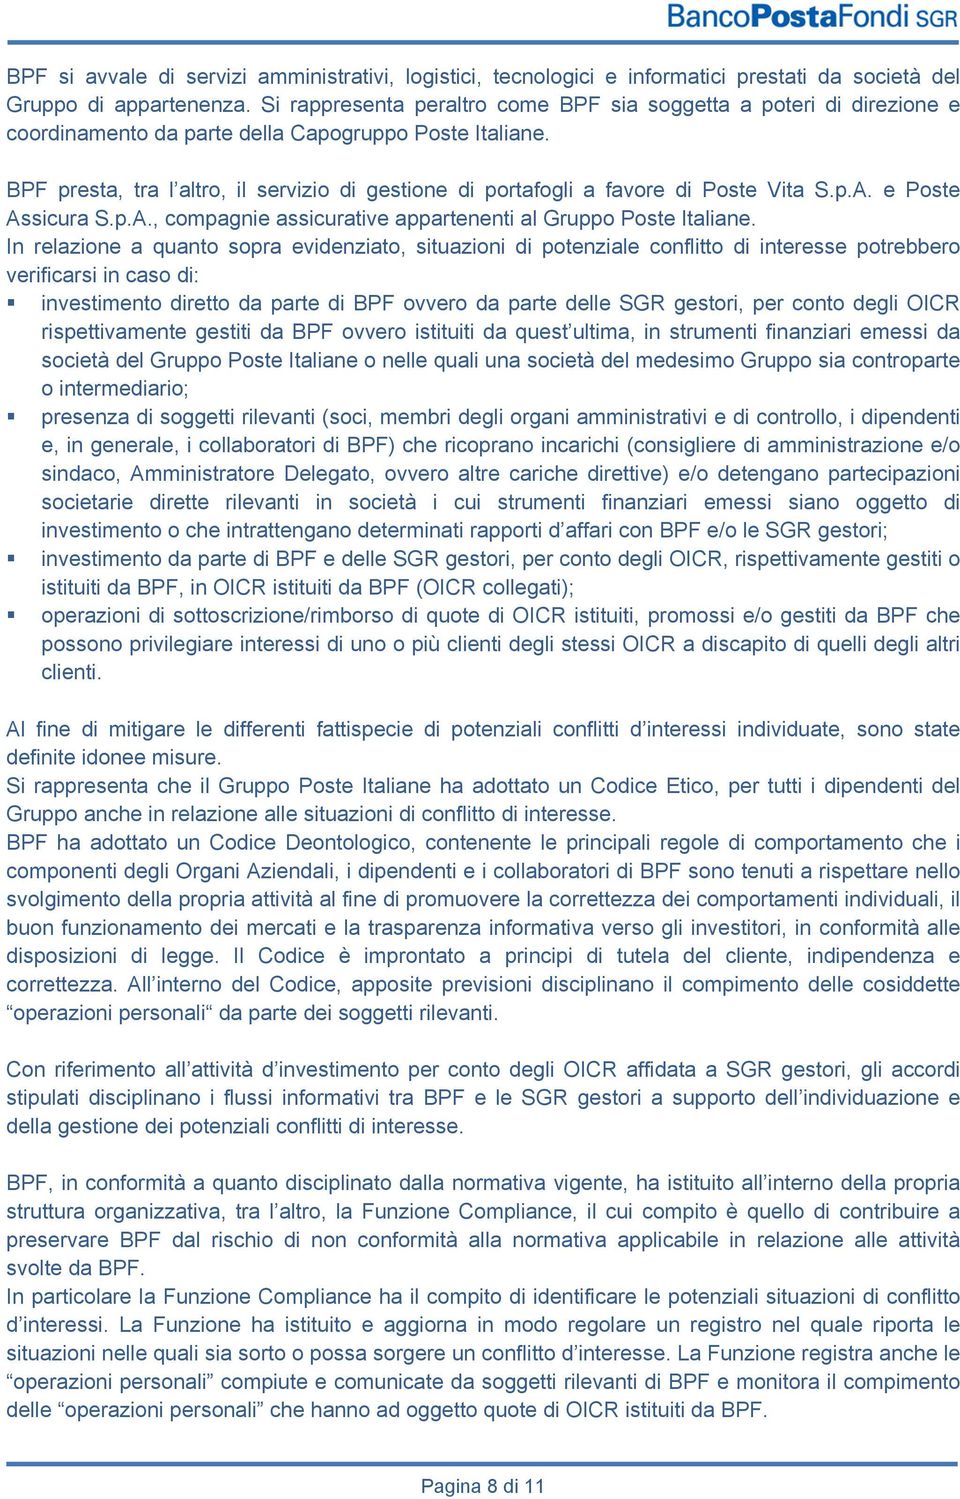 BPF presta, tra l altro, il servizio di gestione di portafogli a favore di Poste Vita S.p.A. e Poste Assicura S.p.A., compagnie assicurative appartenenti al Gruppo Poste Italiane.